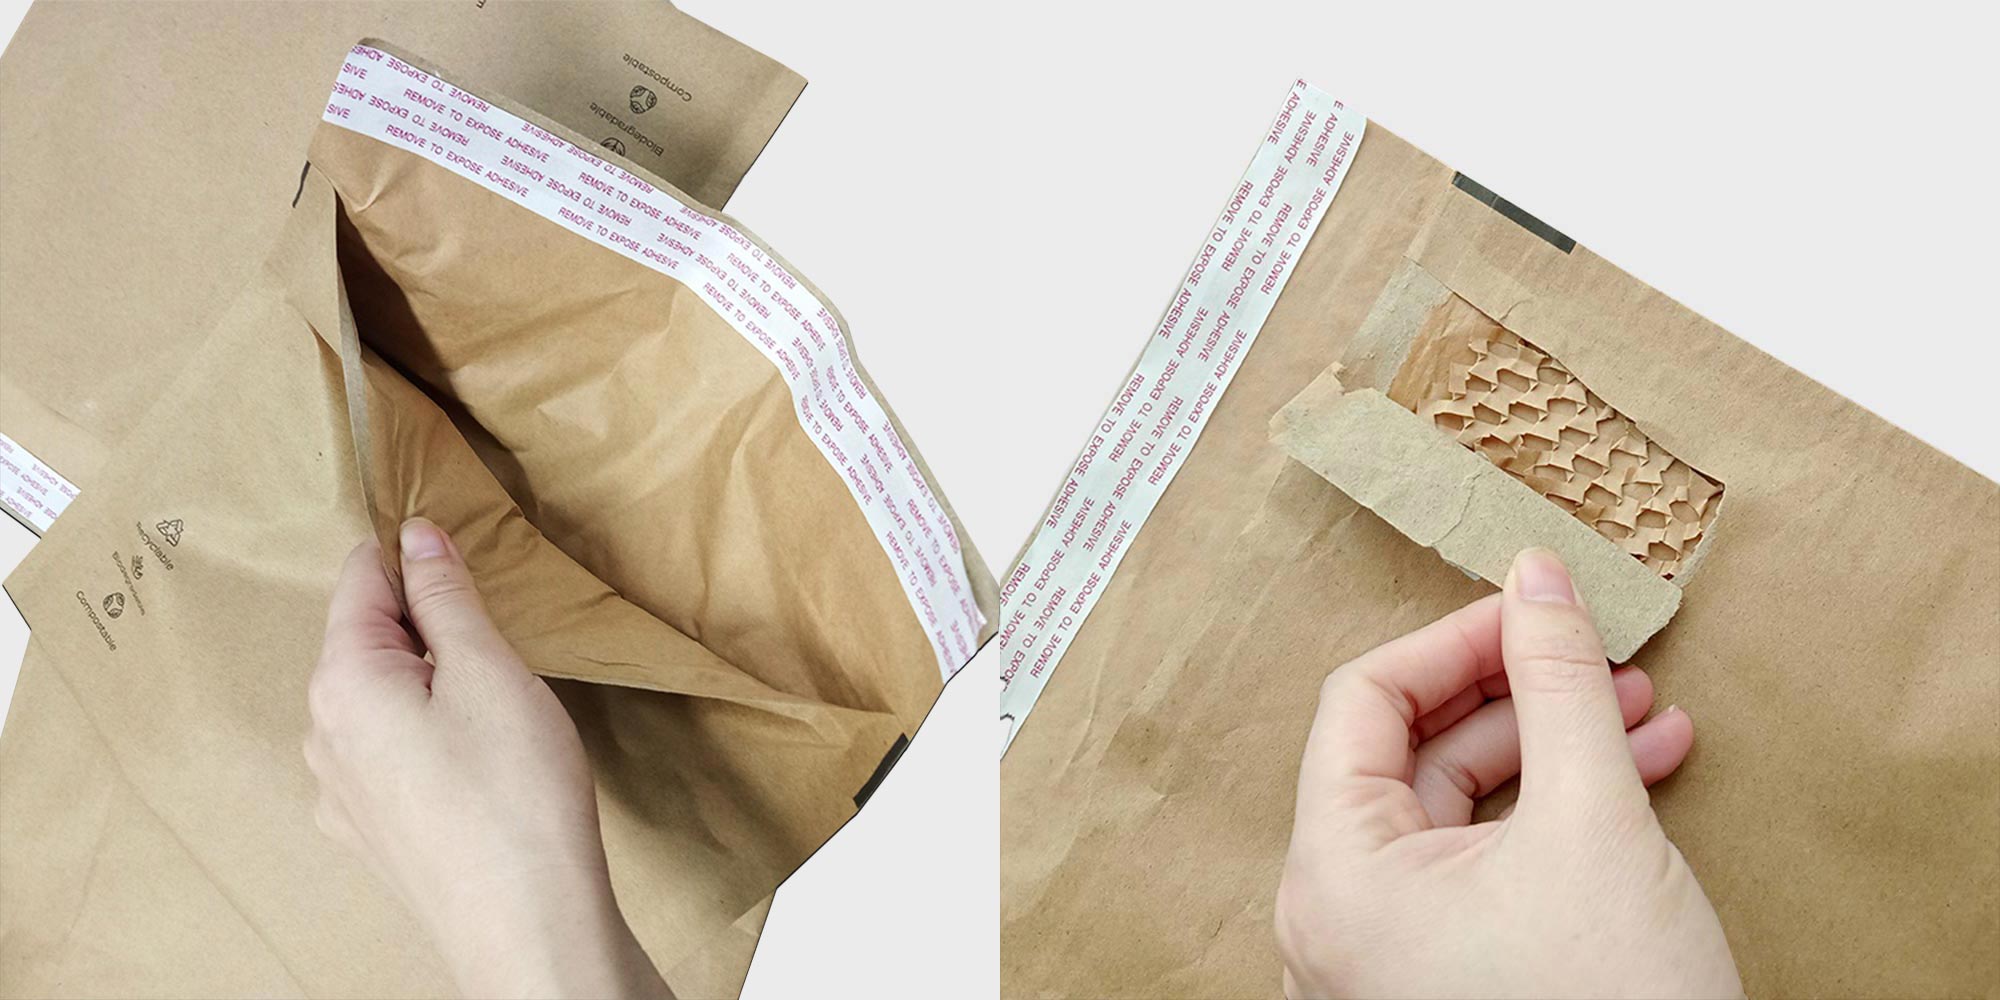 Eco-friendly mailer bag